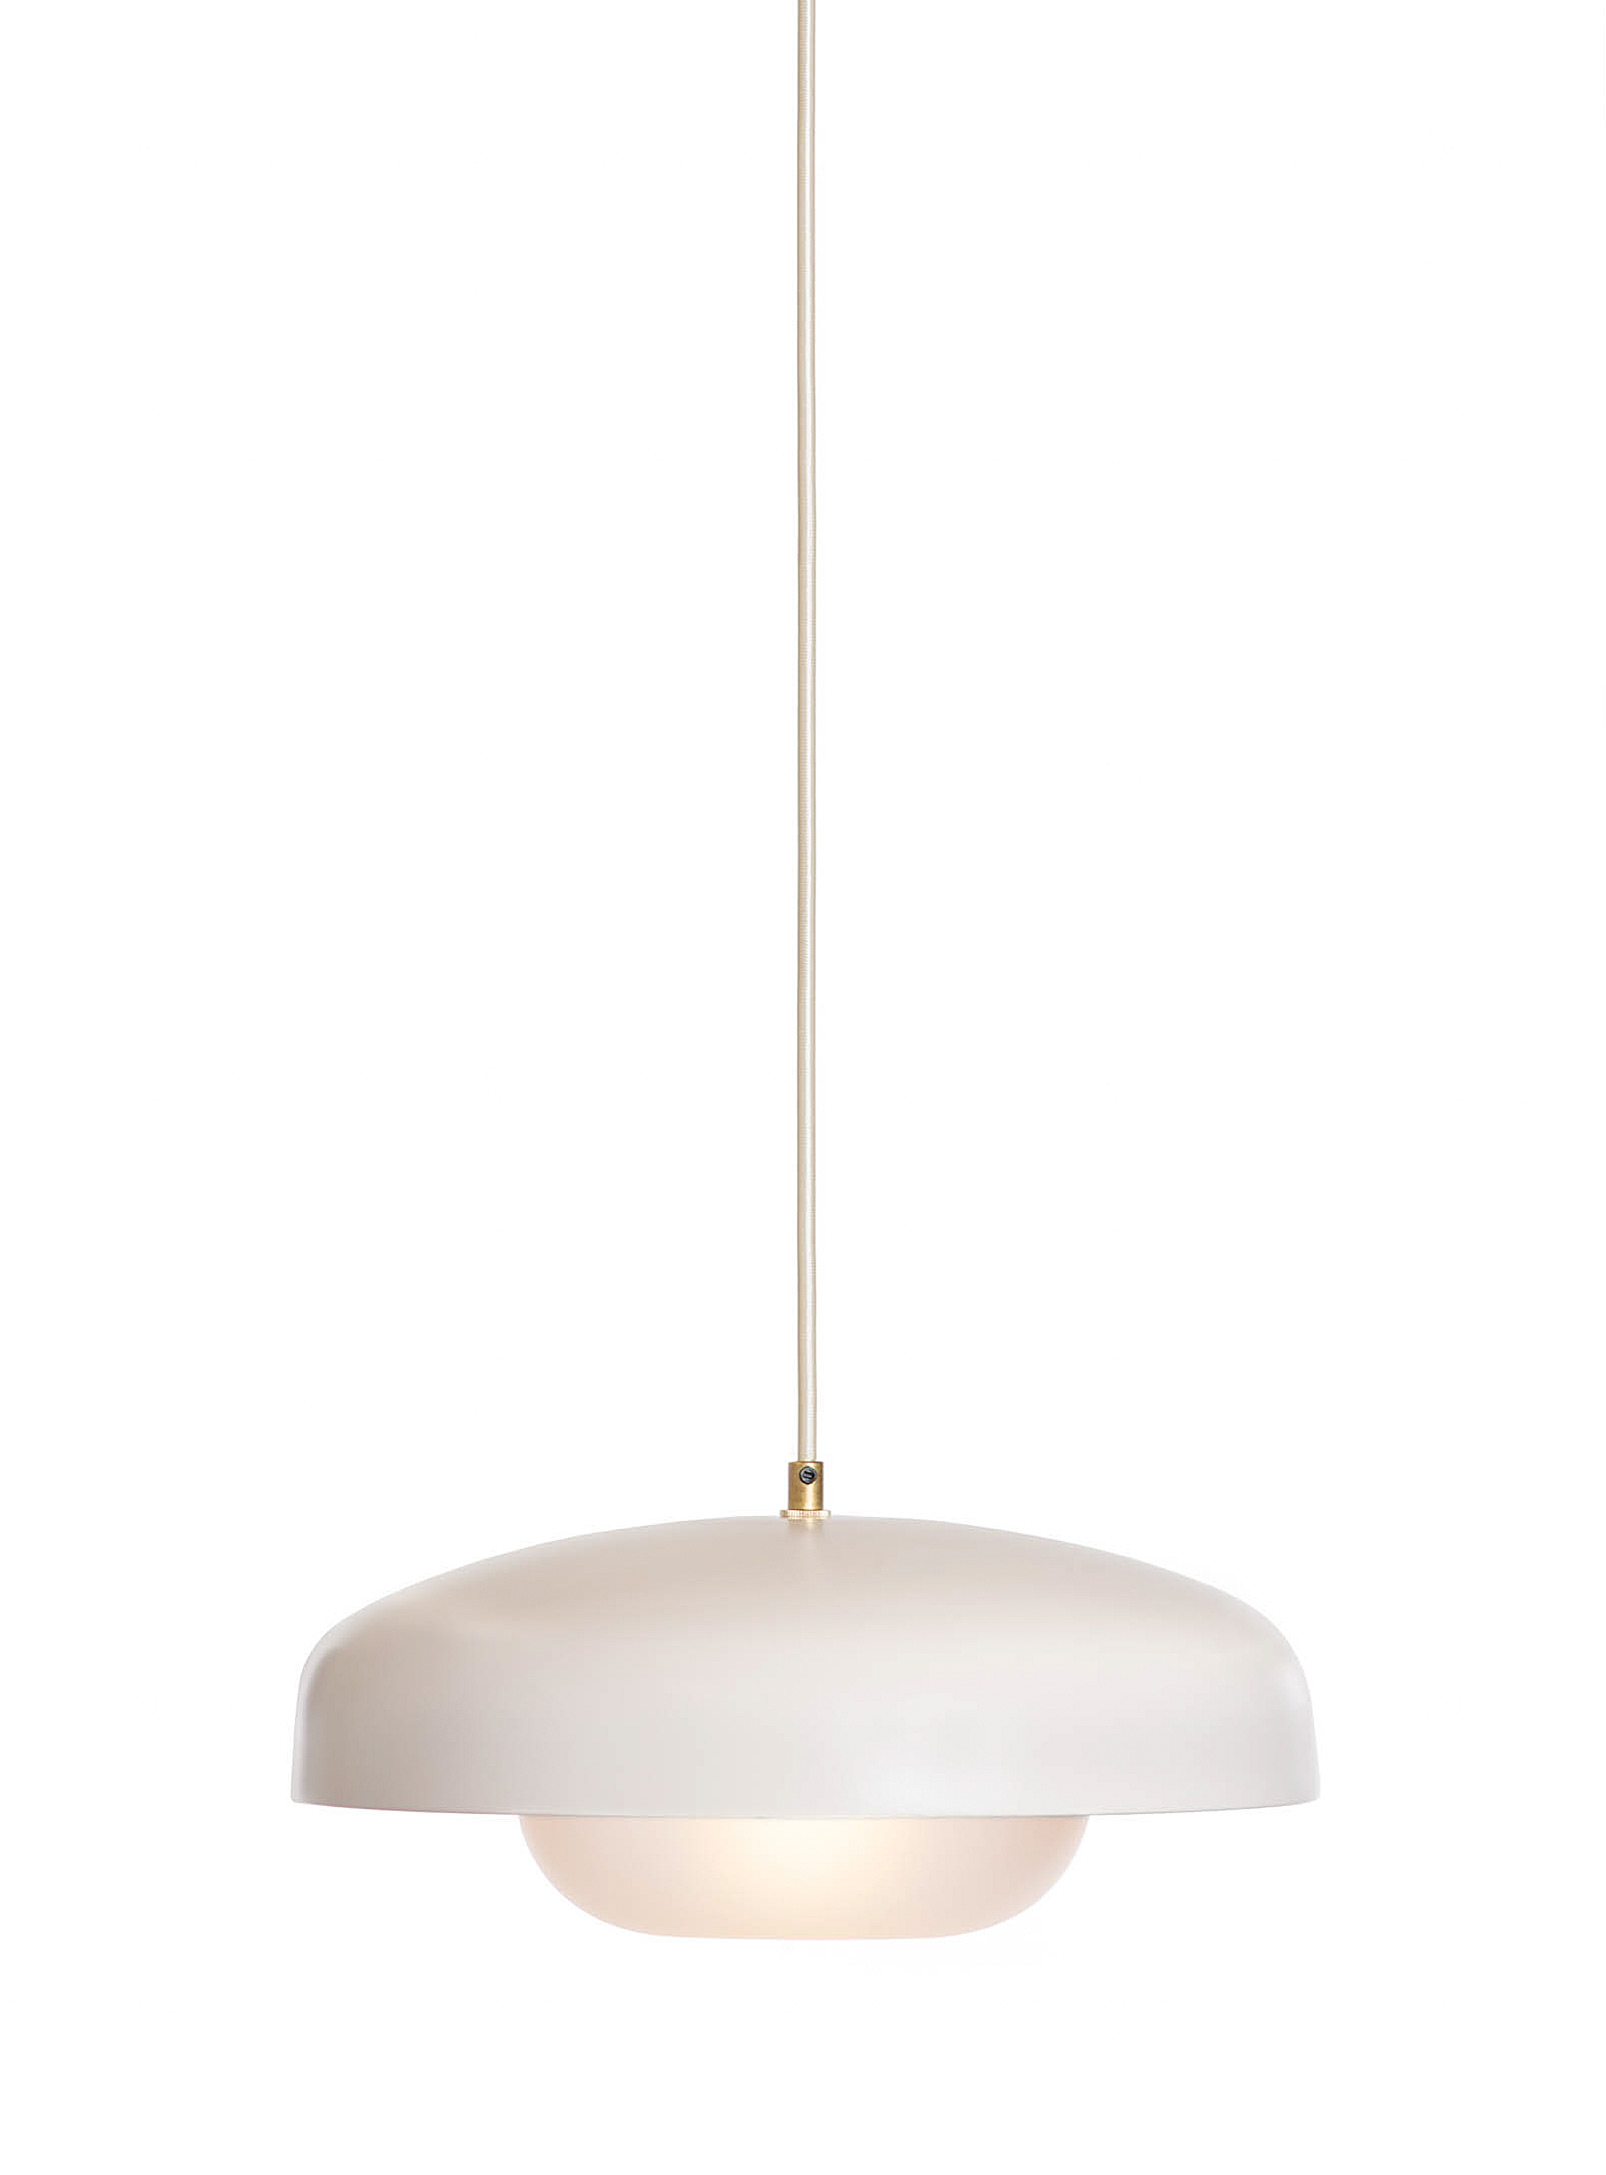 Luminaire Authentik Large Yoko Hanging Lamp In Cream Beige